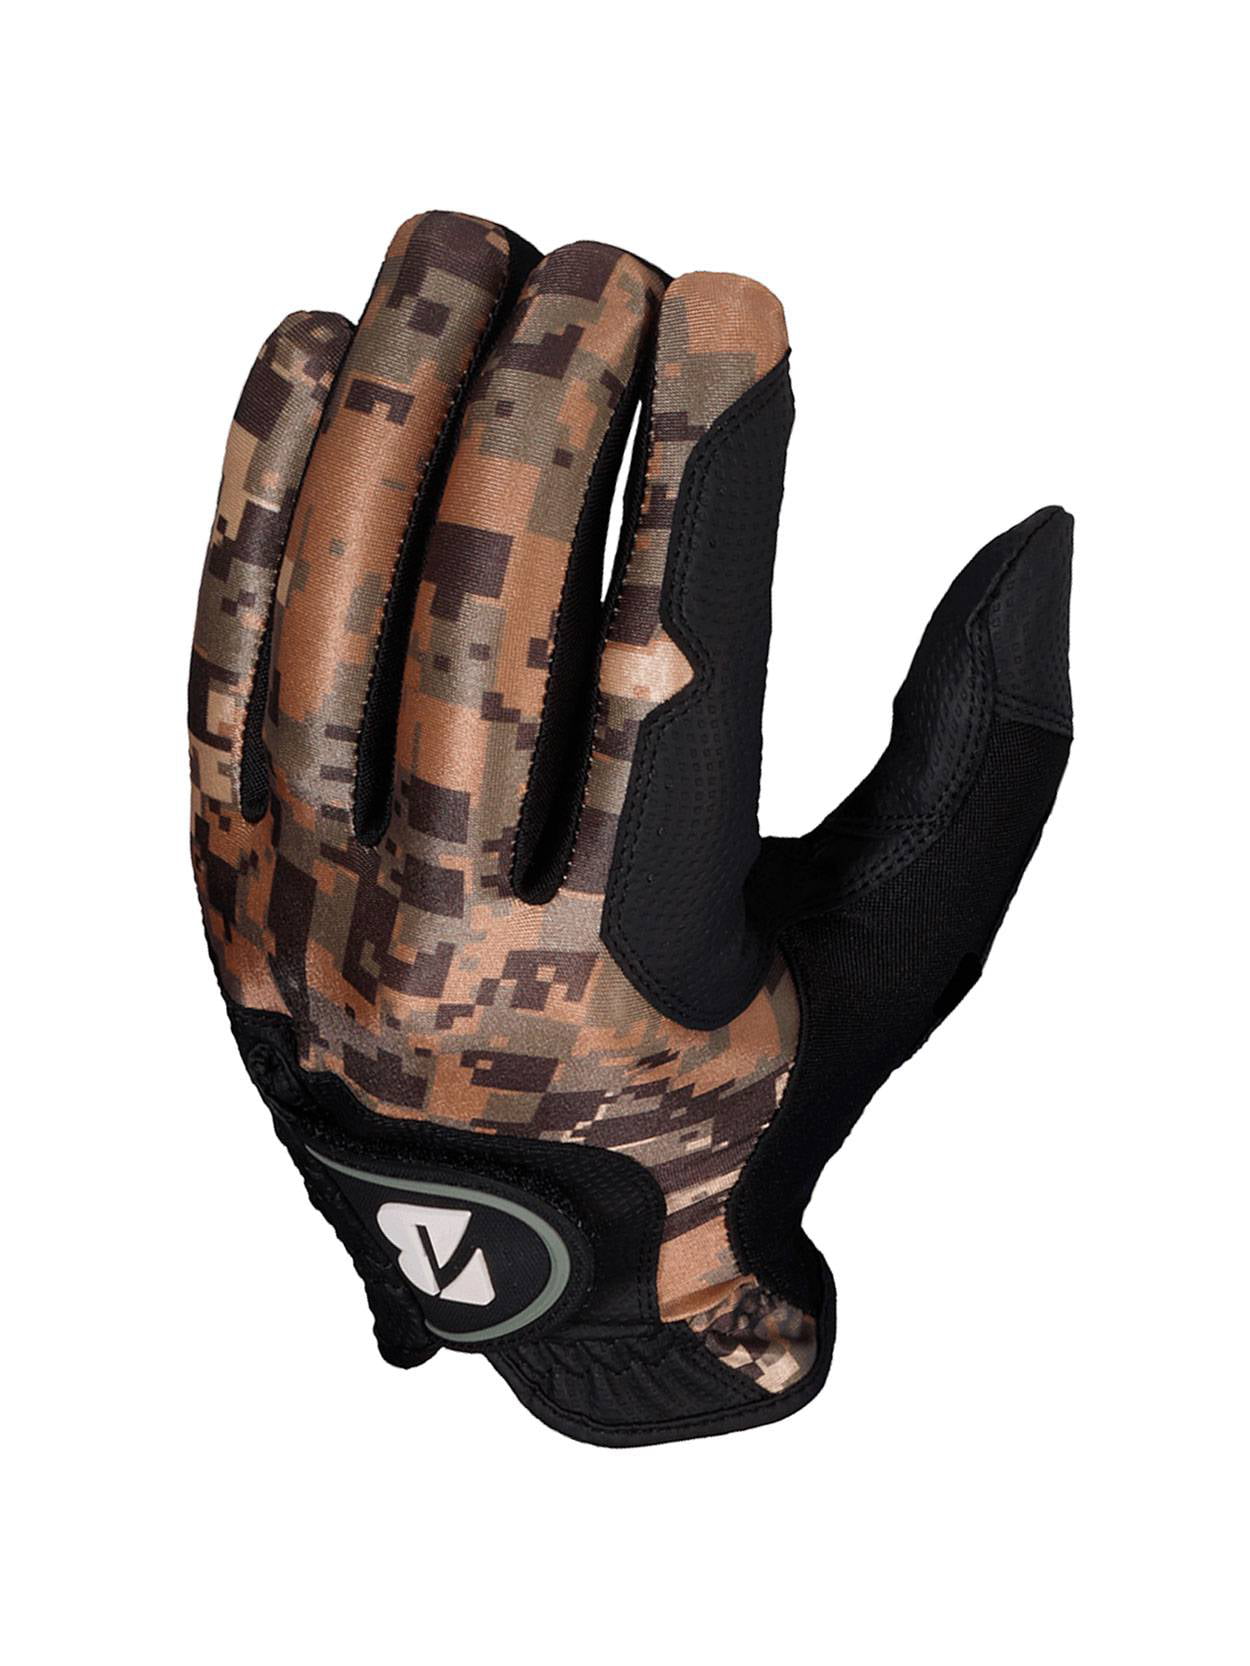 Bridgestone Men's EZ Fit Camouflage Golf Gloves (3Pack), BRAND NEW